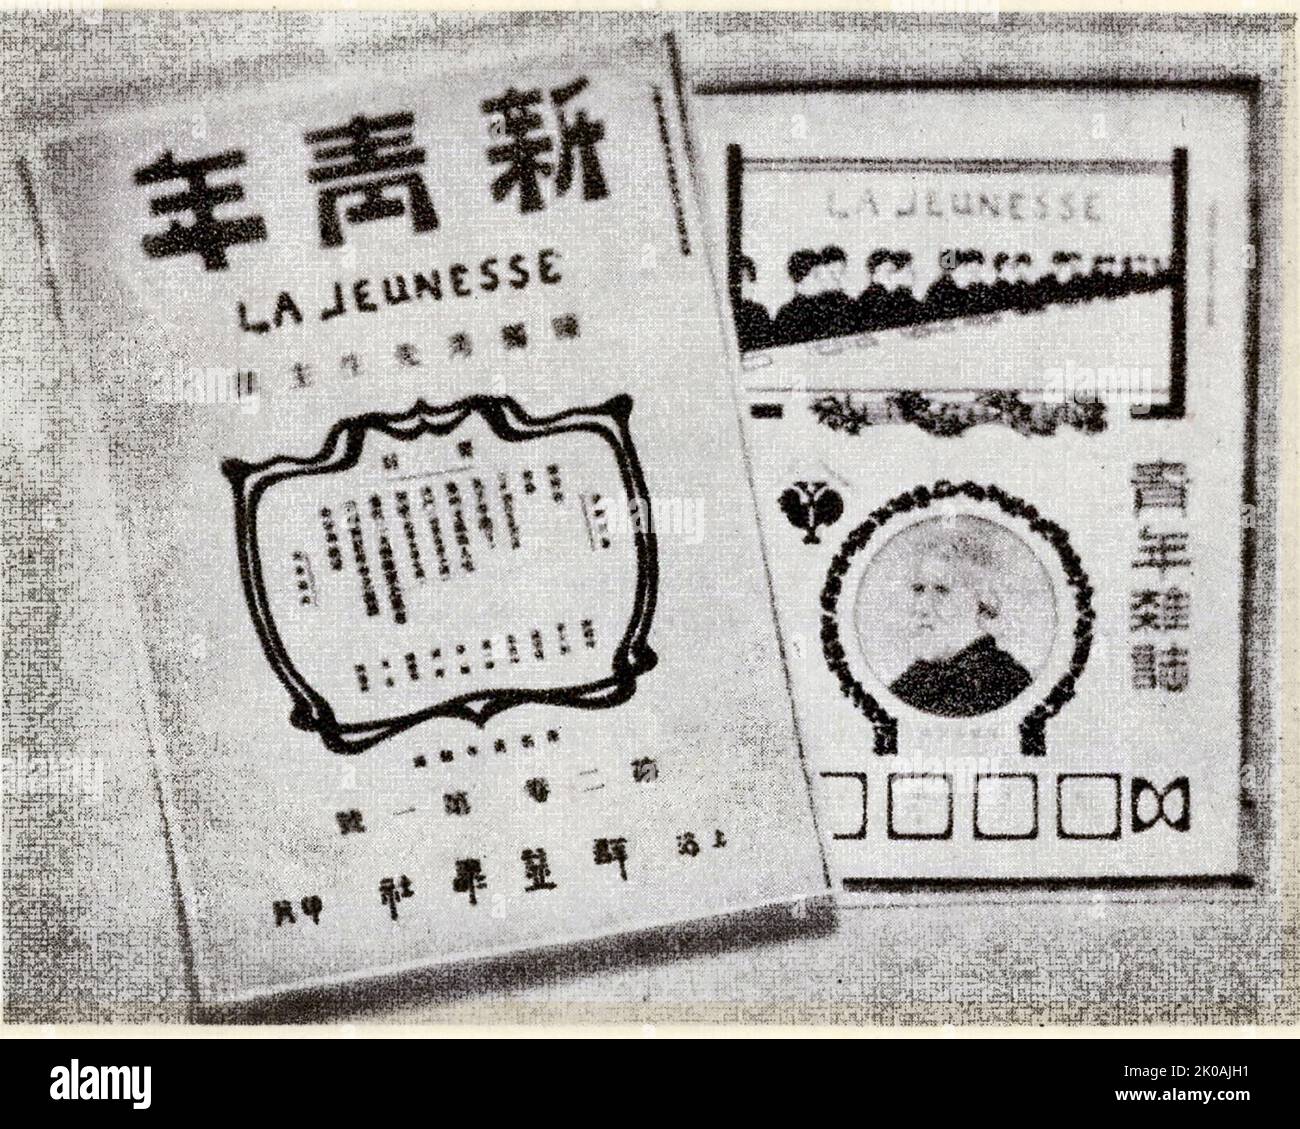 Das Youth Magazine (später in 'New Youth' umbenannt) wurde im September 1915 von Chen Duxiu in Shanghai gegründet. Sie betonte "Demokratie" und "Wissenschaft" und setzte eine neue kulturelle Bewegung in Bewegung, die sich vollständig gegen die feudale Kultur ausssetzte. Seit September 1920 wurde der achte Band zur institutionellen Veröffentlichung der Shanghaier Initiationsgruppe der Kommunistischen Partei Chinas. Im Juni 1923 wurde es zu einer theoretischen Veröffentlichung des Zentralkomitees der Kommunistischen Partei Chinas. Die Veröffentlichung wurde im Juli 1926 eingestellt. Stockfoto